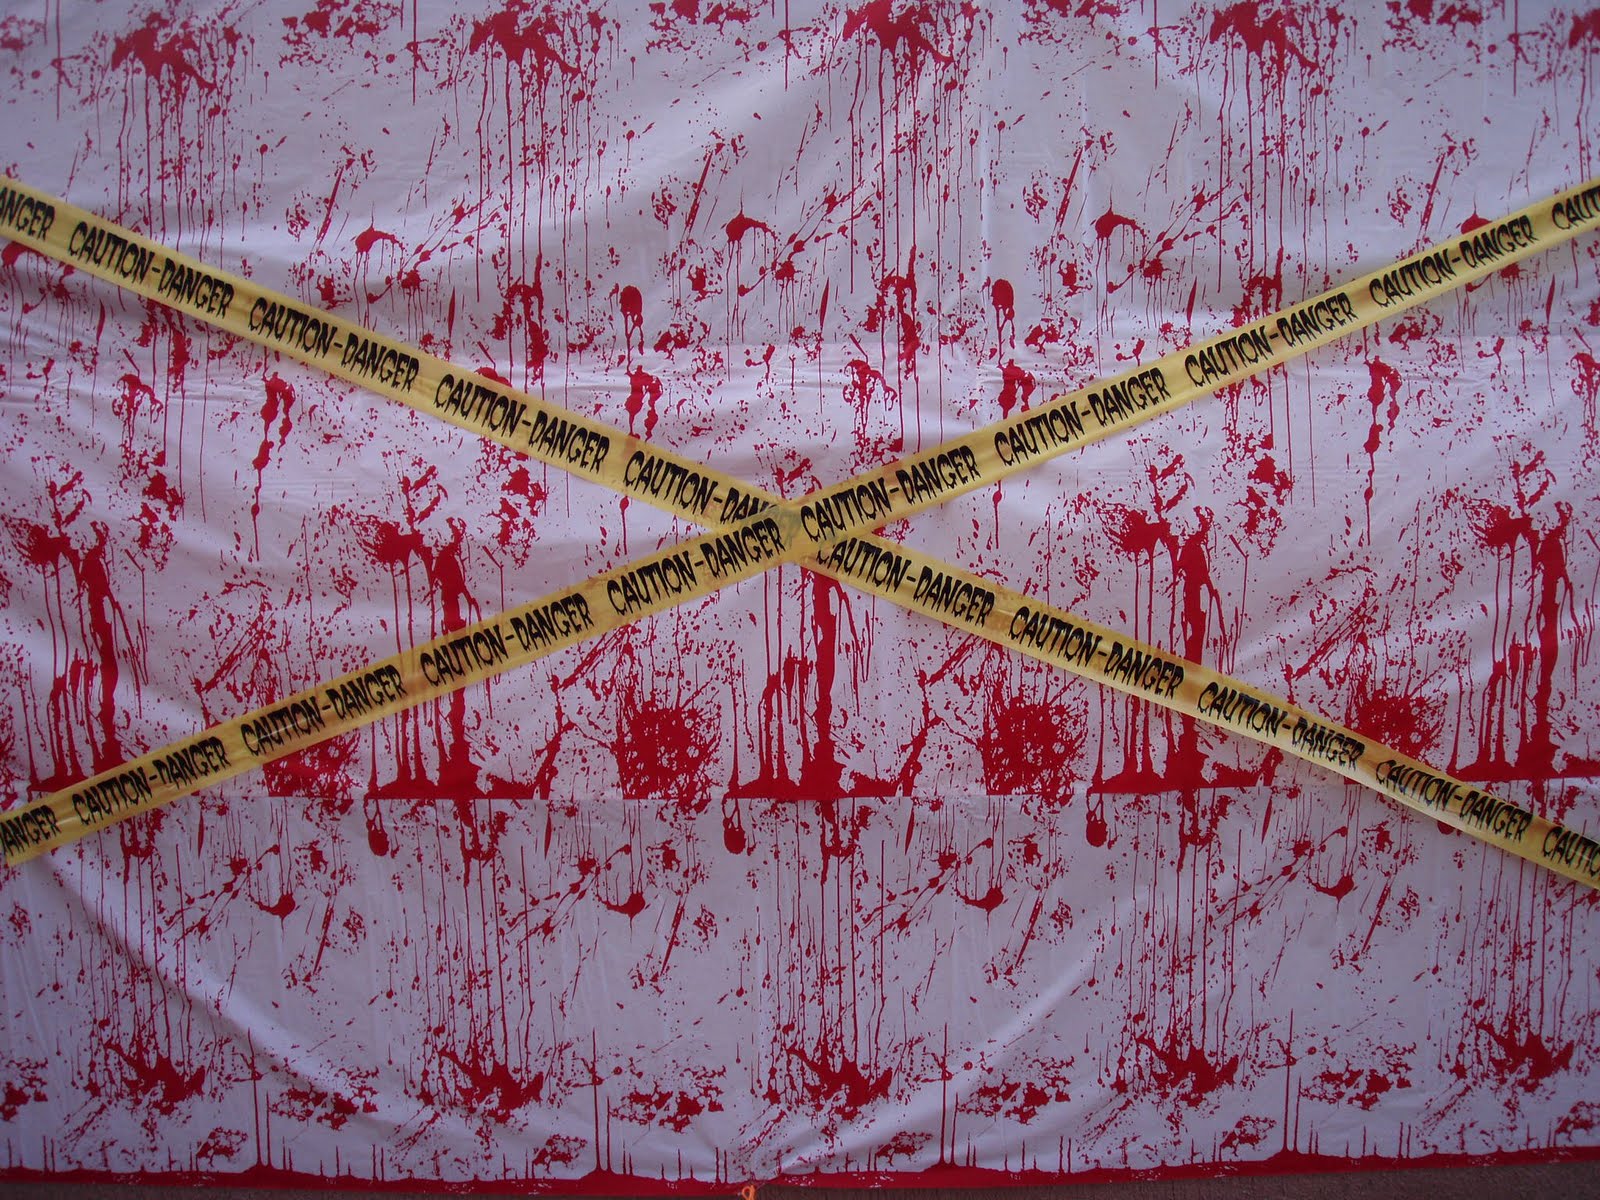 Wallpaper Dexter Blood Spatter I Alwaysdexter Digital